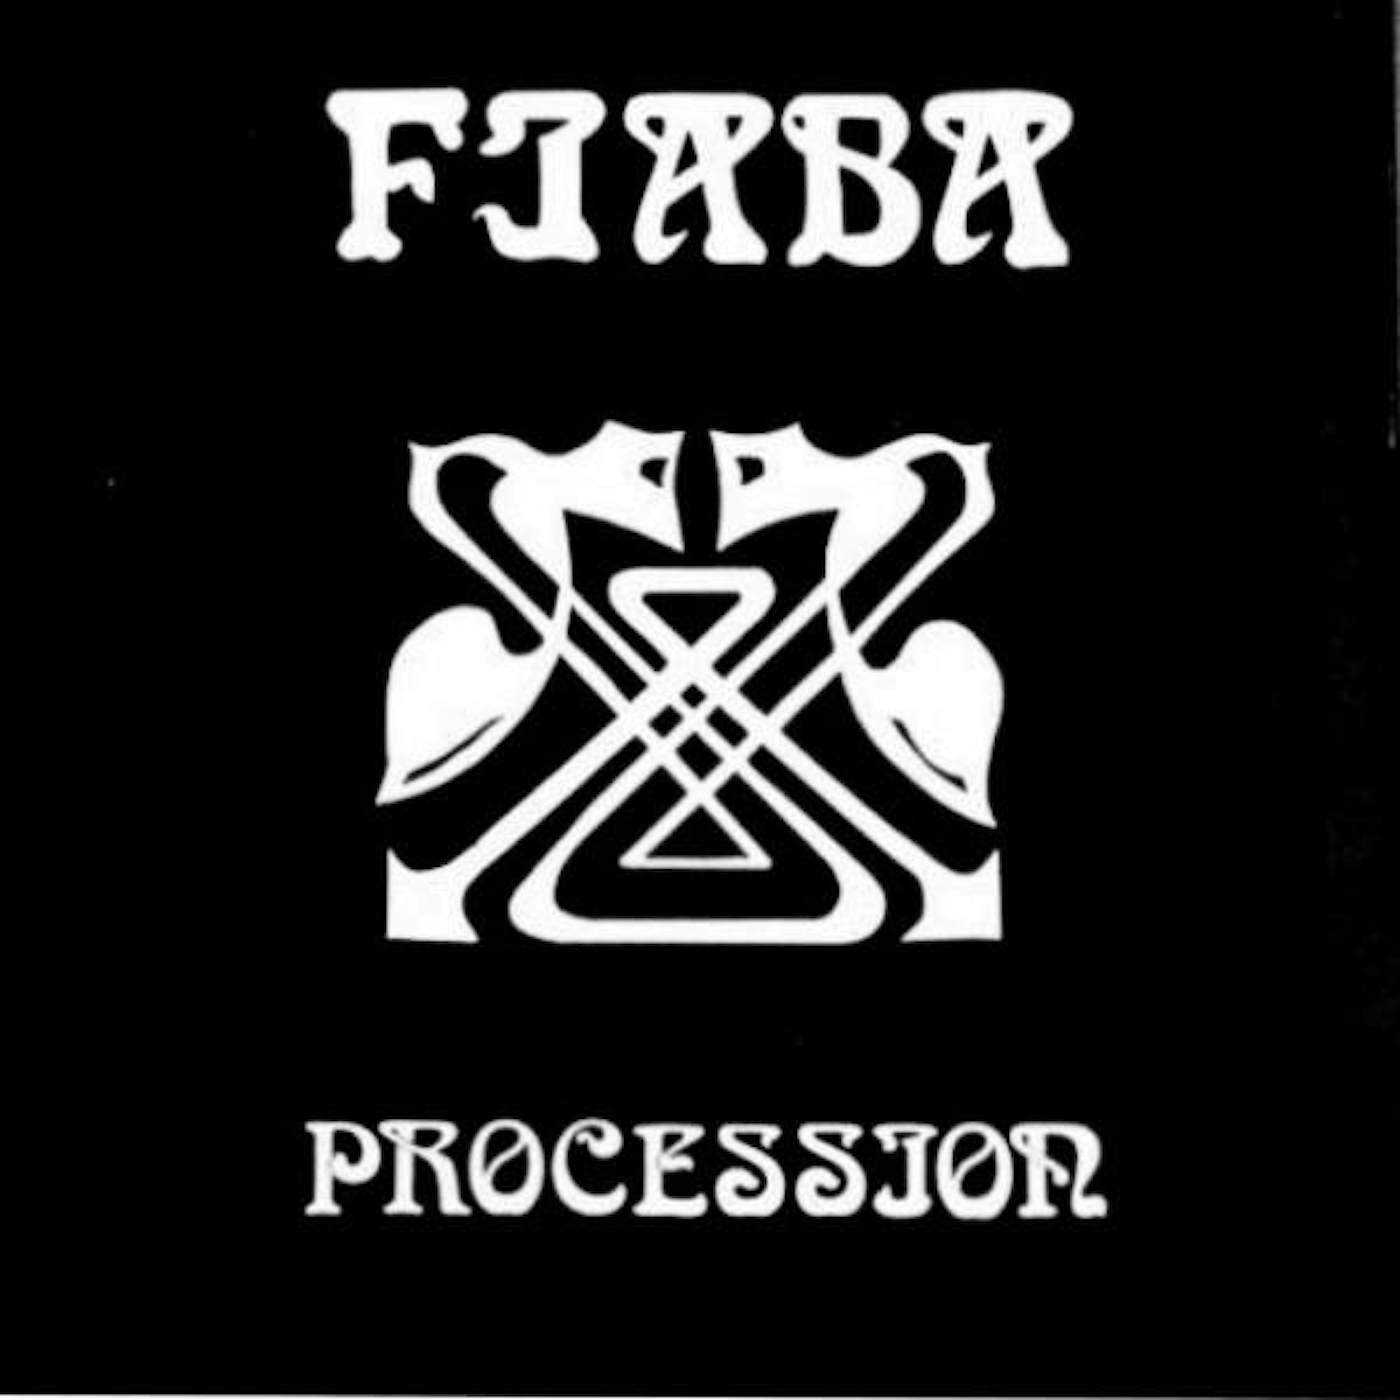 Procession FIABA Vinyl Record